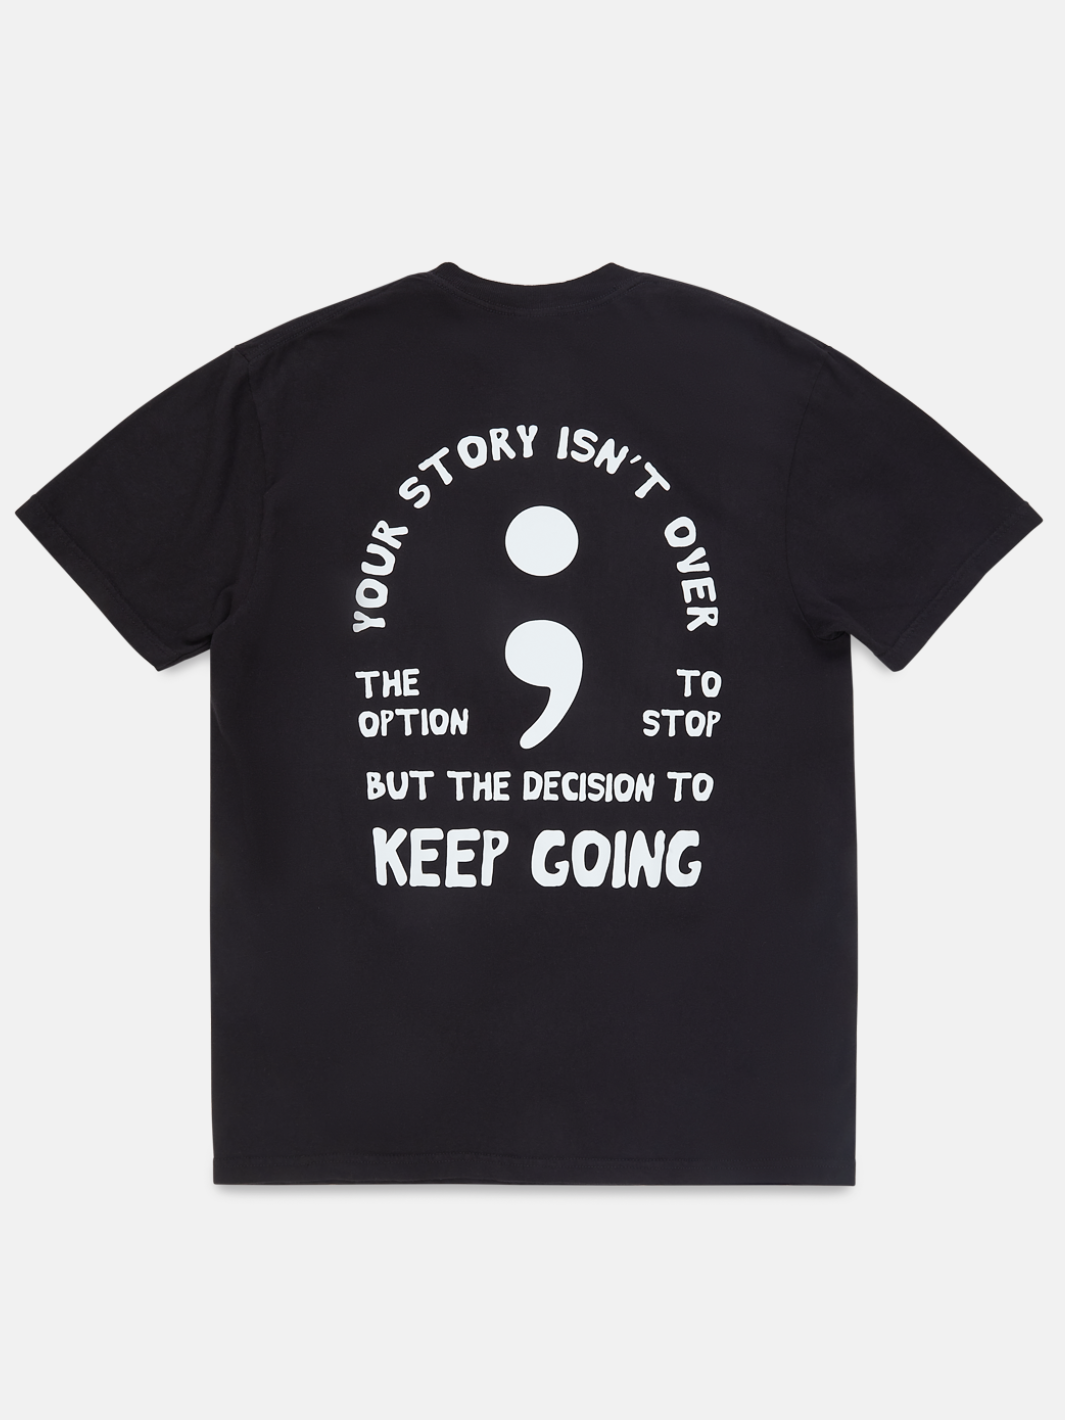 "Keep Going" T-Shirt